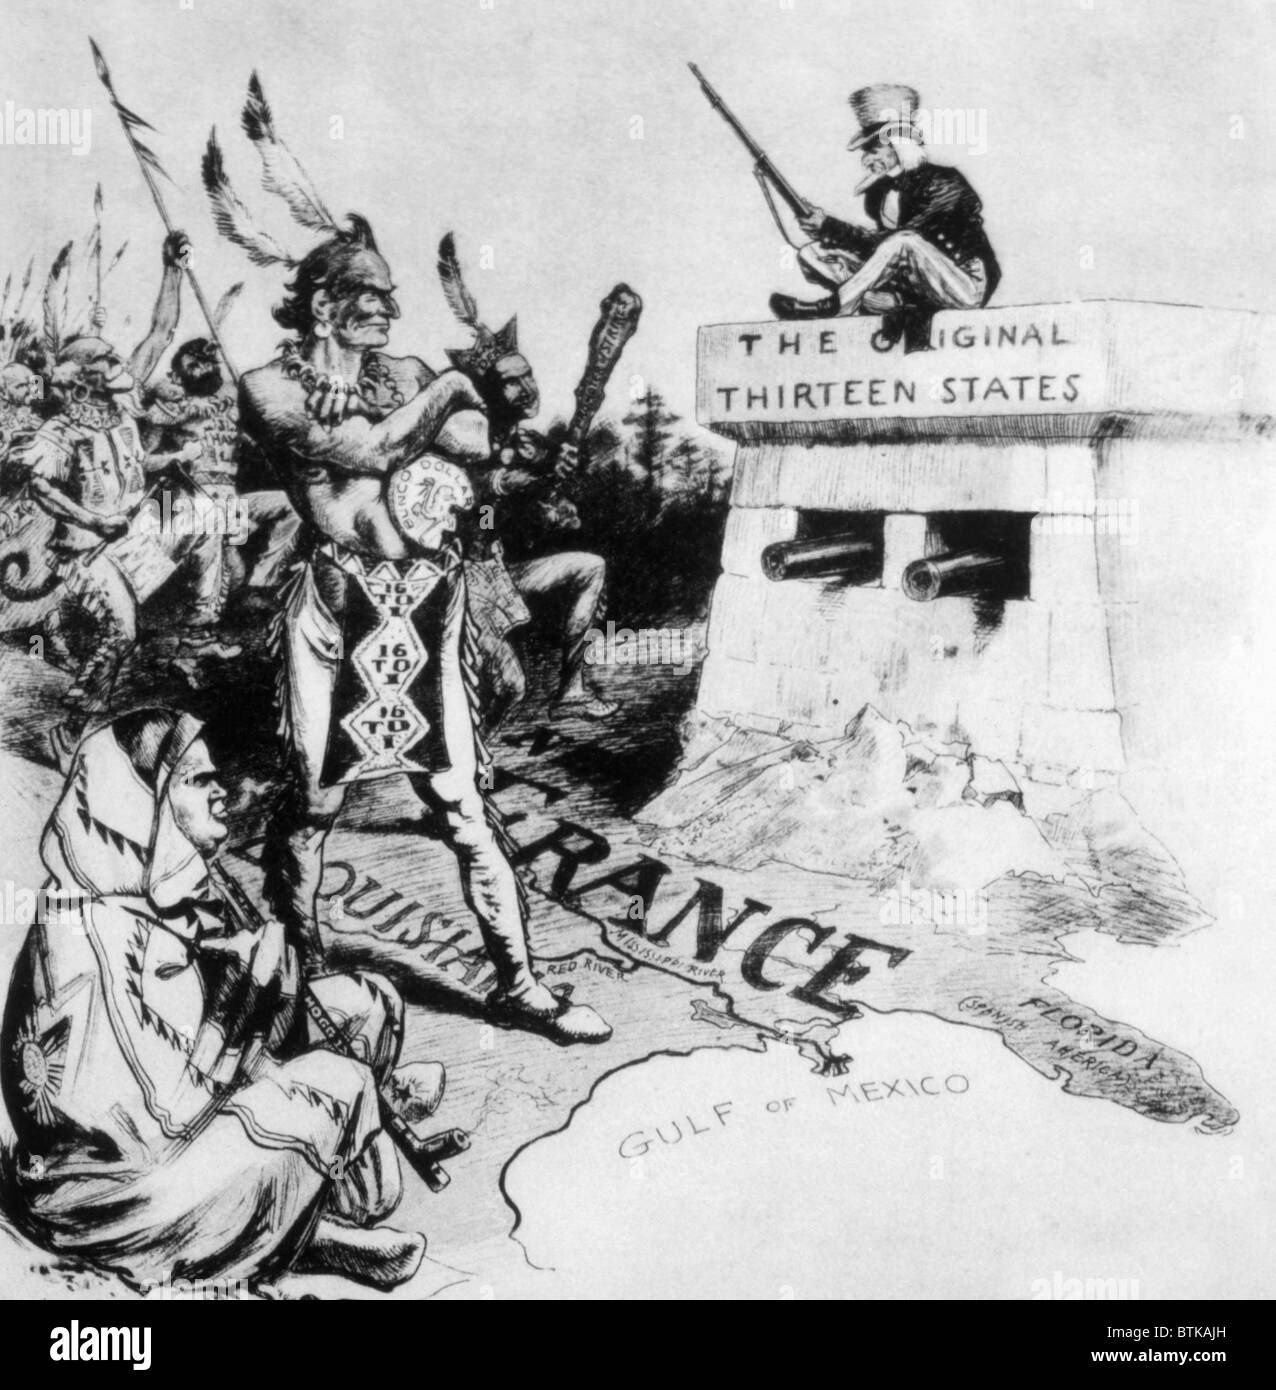 Cartoon politico da William Allen Rogers favorendo la rielezione del presidente William McKinley raffigura Democrat William Jennings Bryan socialista e Eugene V. Debs come western selvaggi che attacca l'originale tredici membri, 1900 Foto Stock